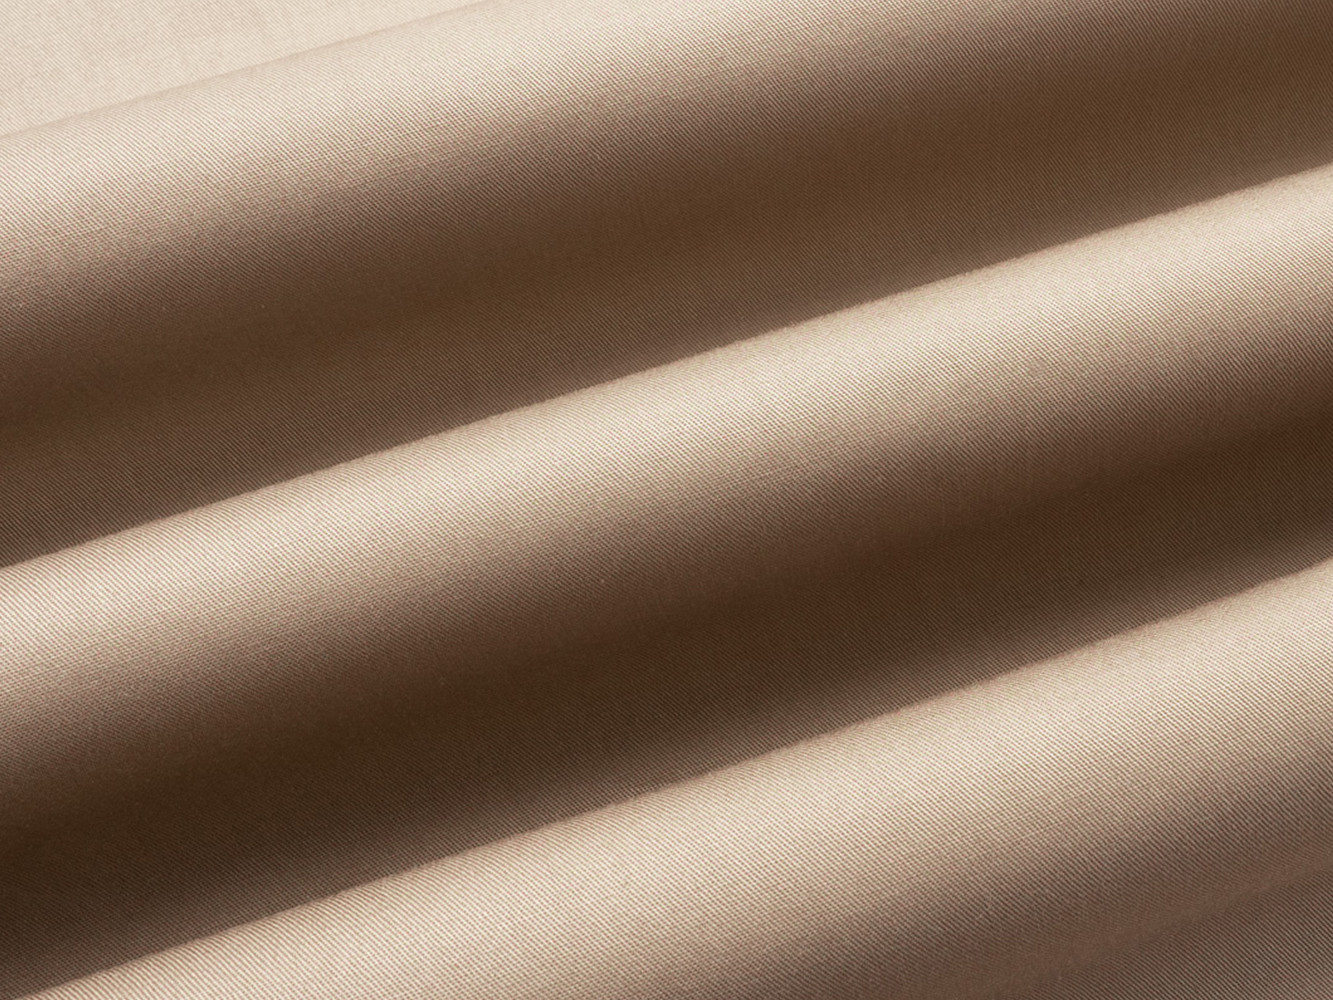 Простыня  Моноспейс бежевый на резинке Бежевый, сатин, 1600 х 2000 х 230 мм от Первый Мебельный